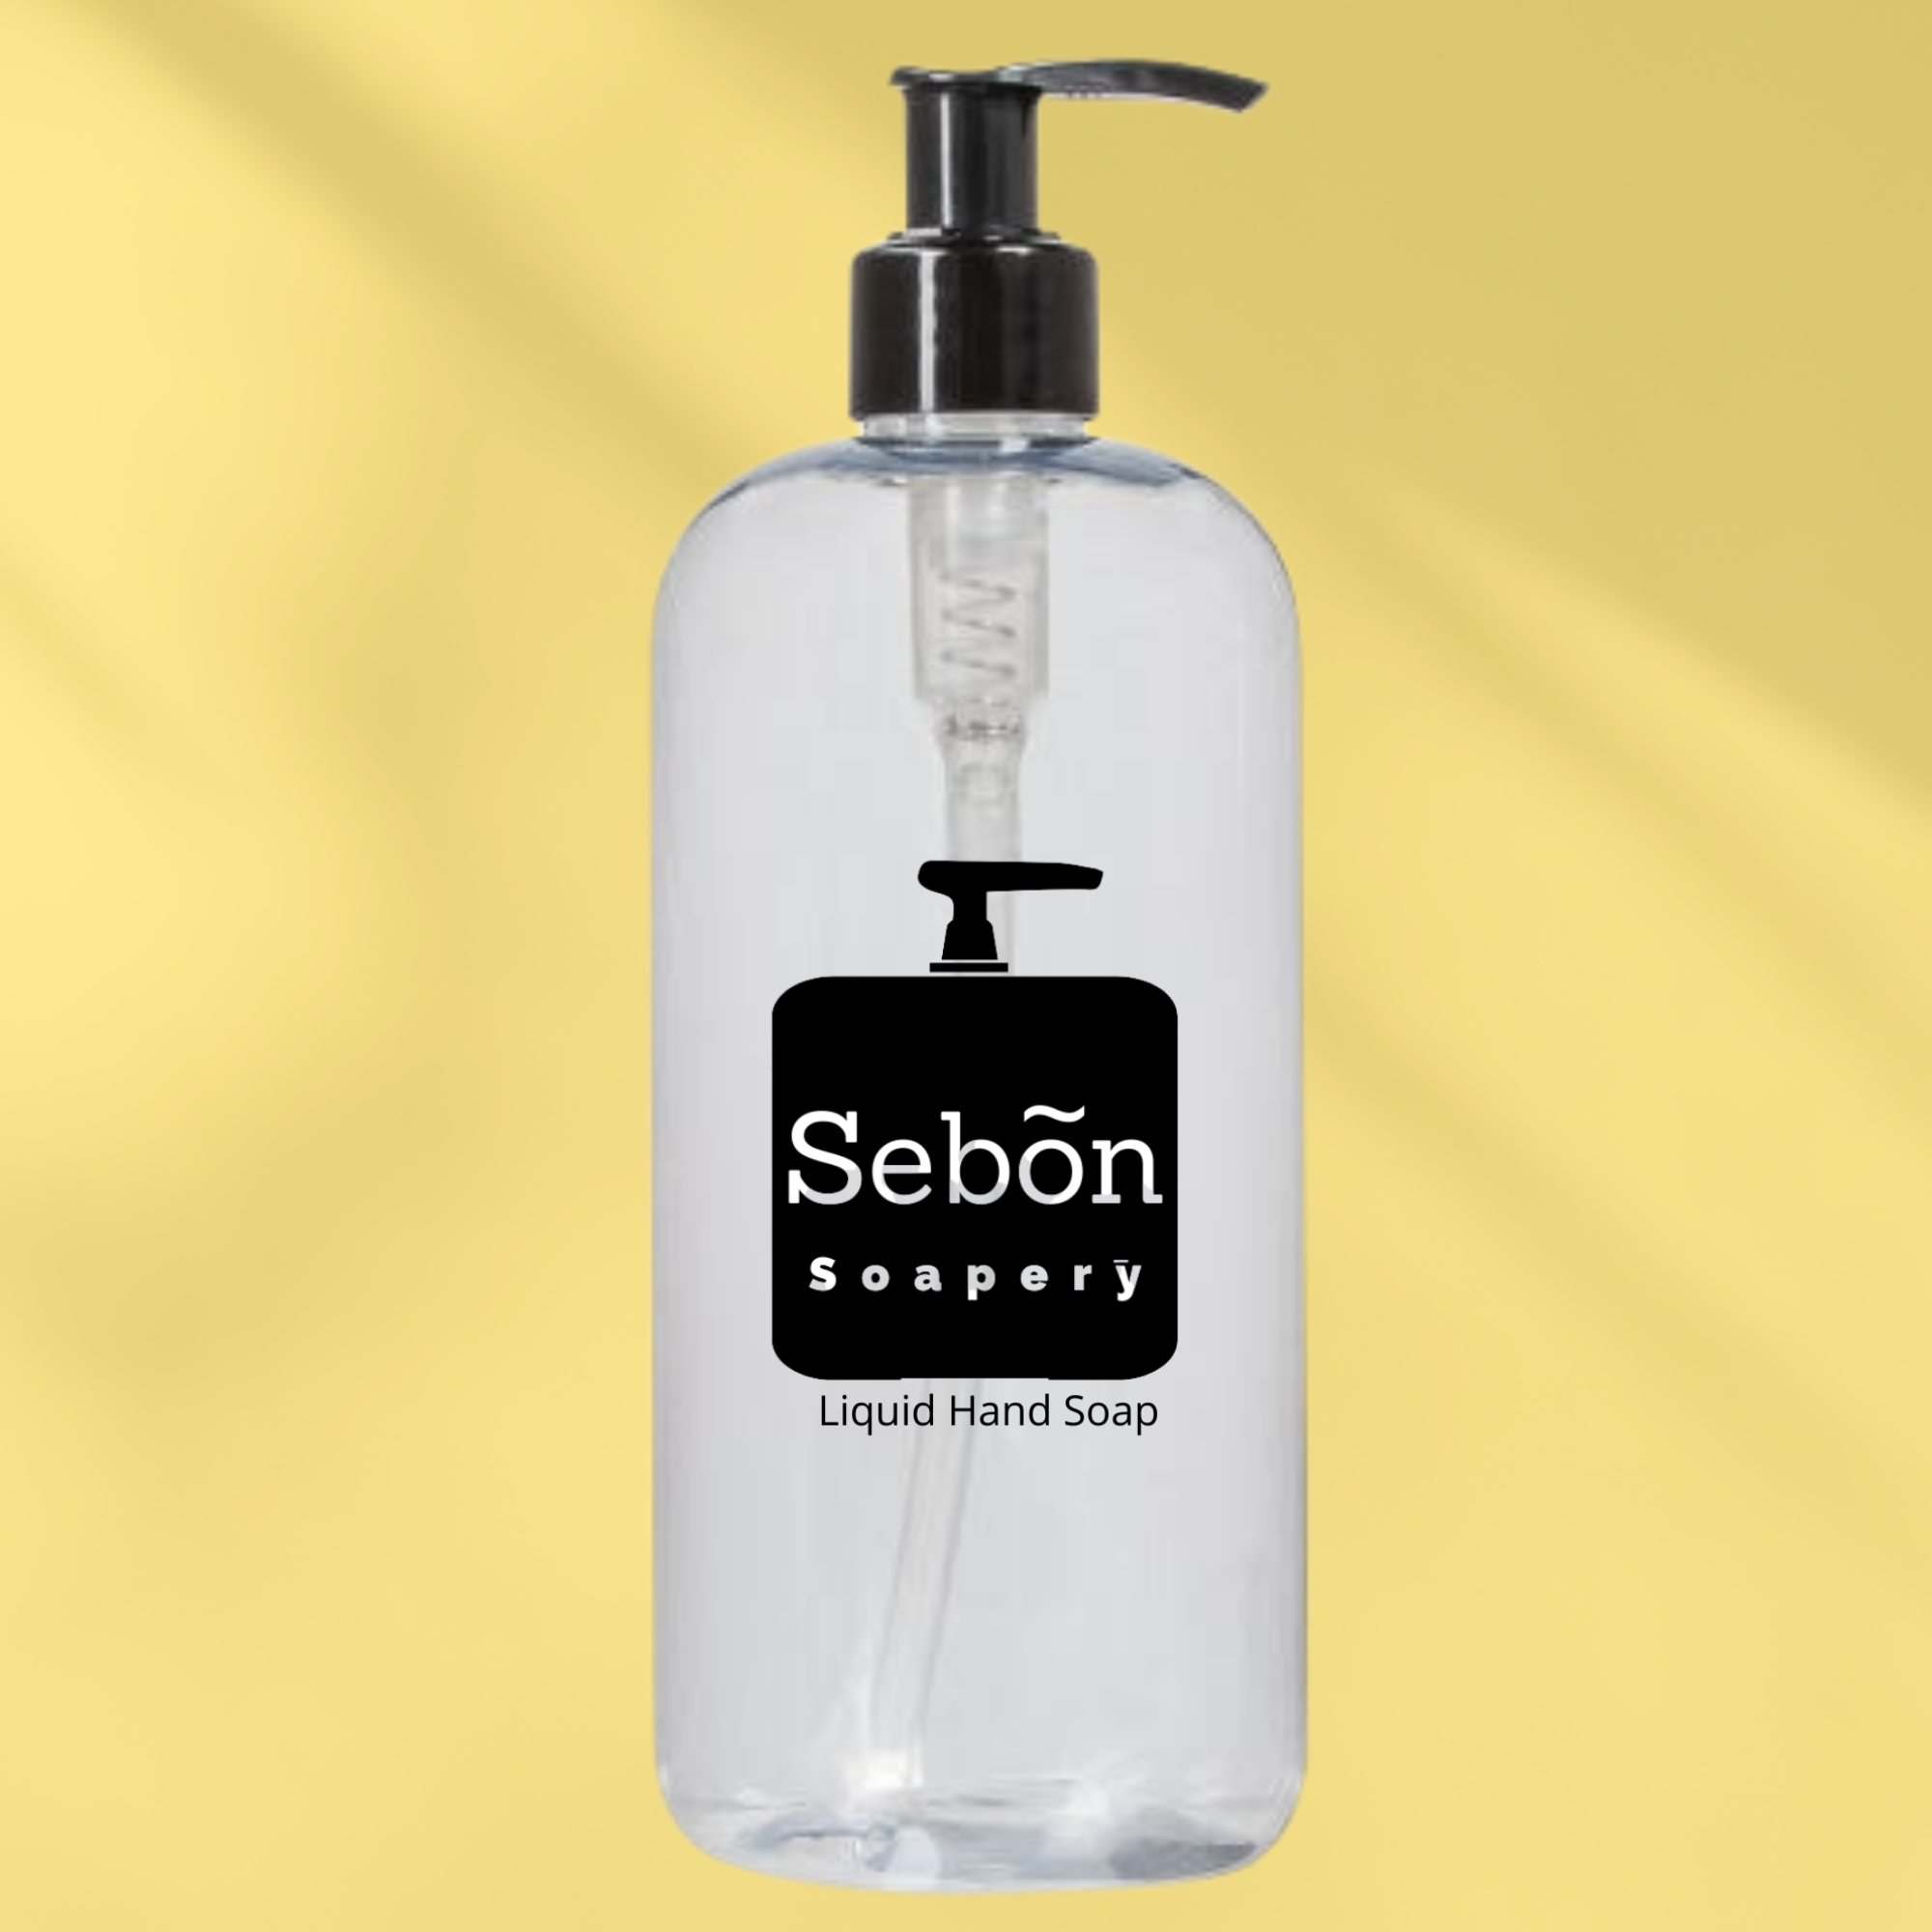 Sebon Black Cherry Vanilla Scented Liquid Hand Soap with Olive Oil